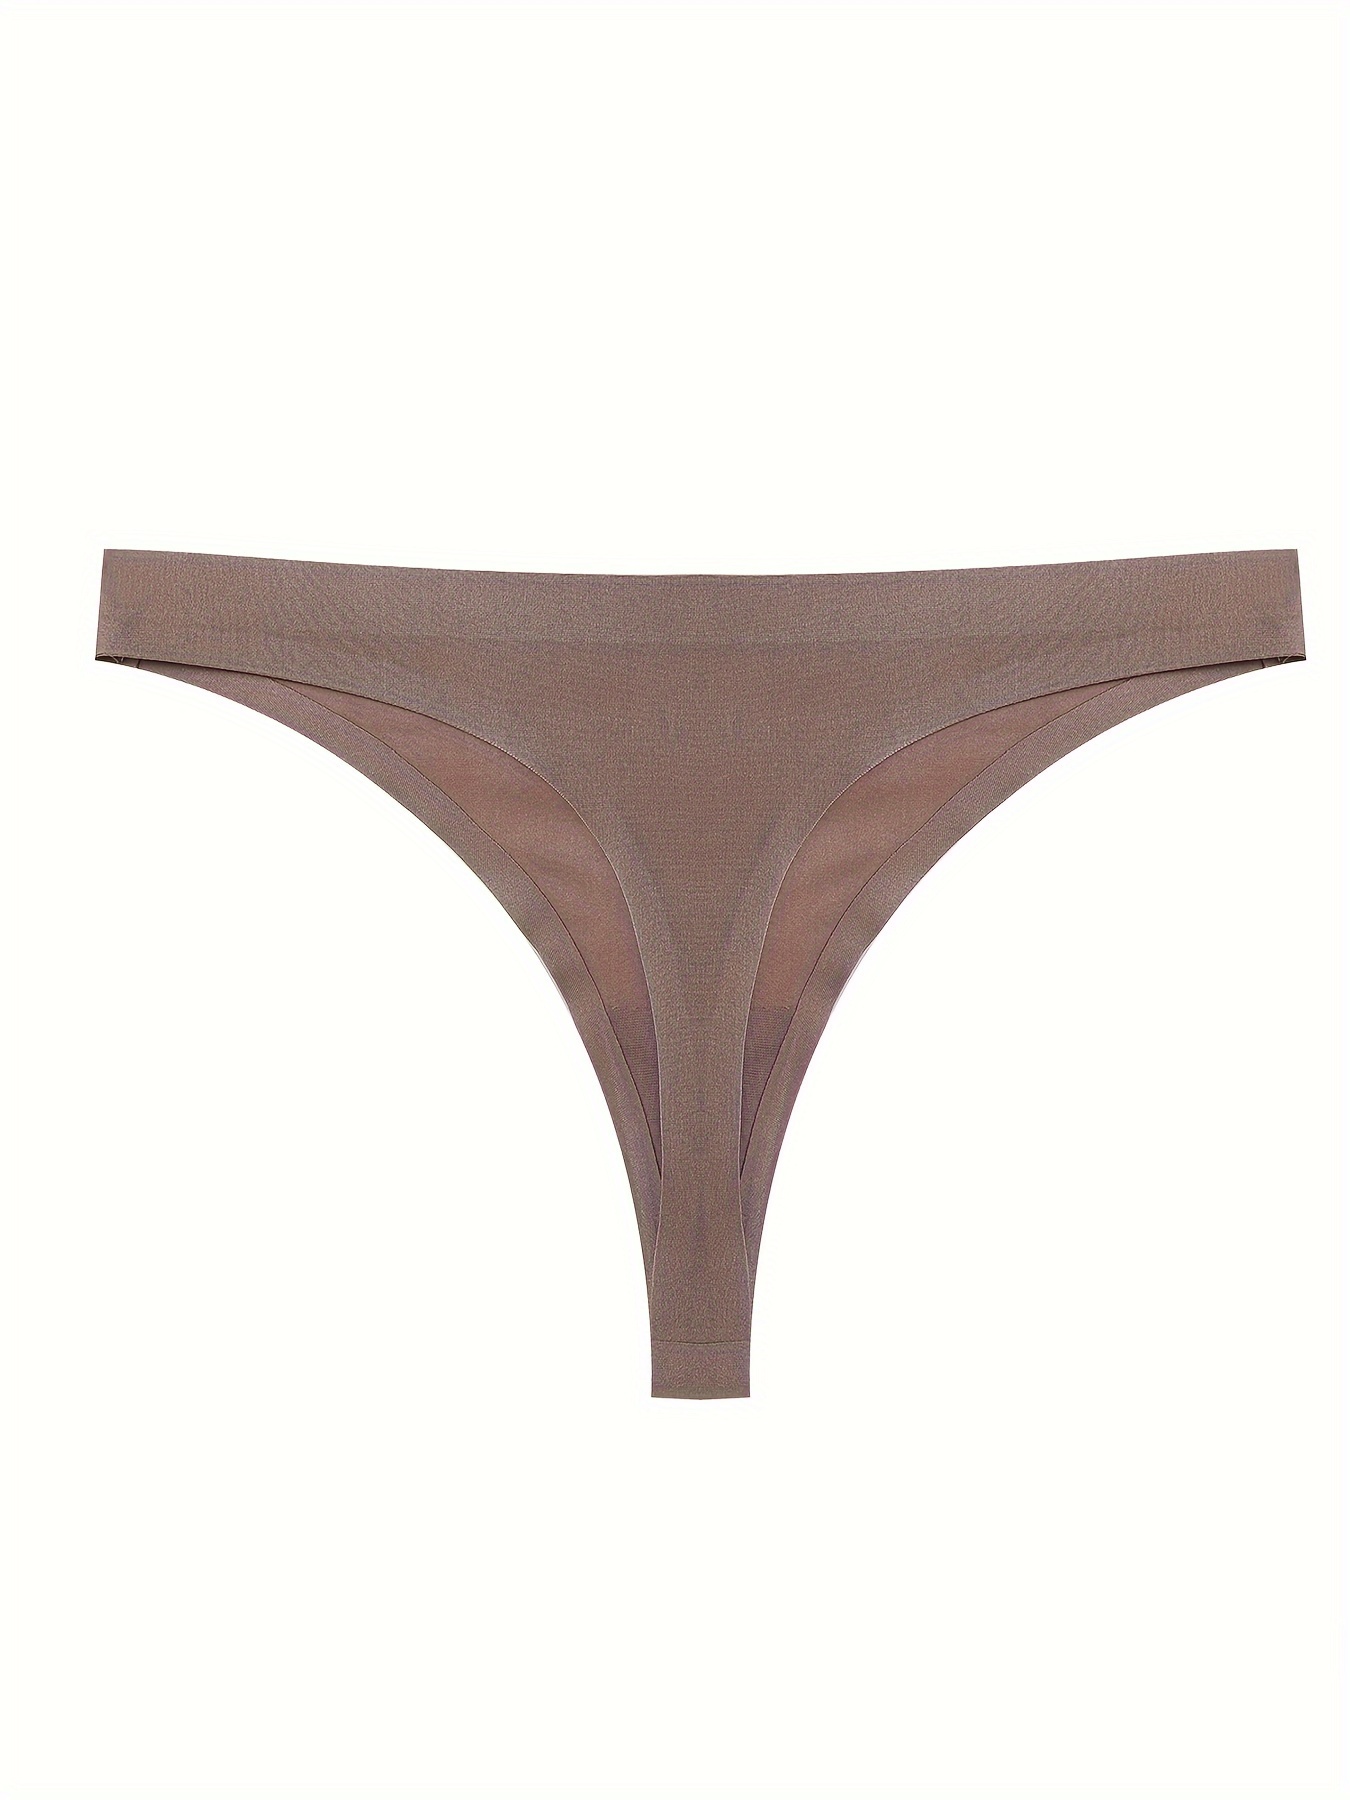 Aayomet Seamless Underwear for Women High Spring Comfort Ice Silk Panties  (Beige, XXXL) 